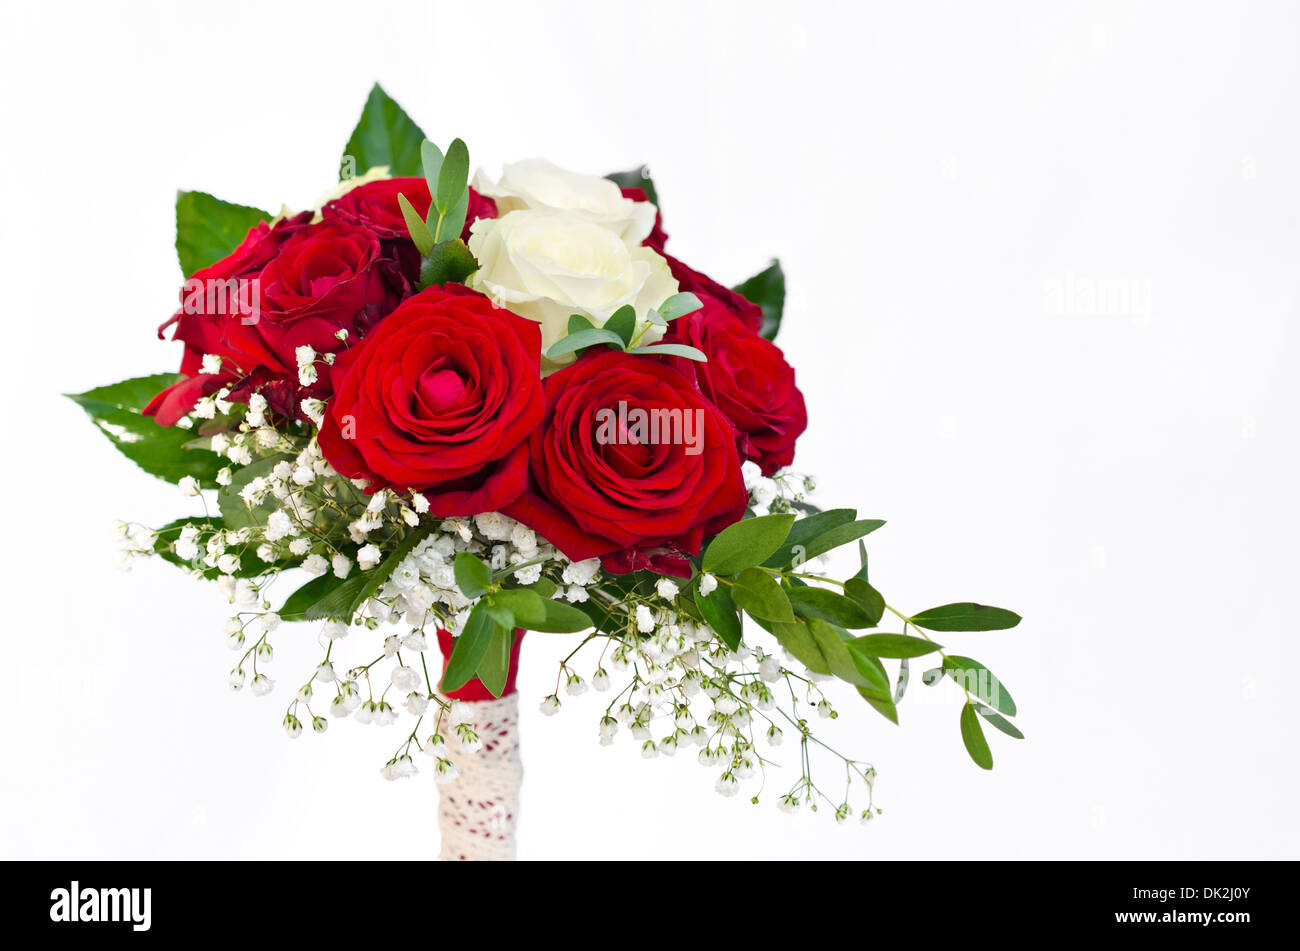 Boda nupcial ramo de rosas blancas y rojas Foto de stock